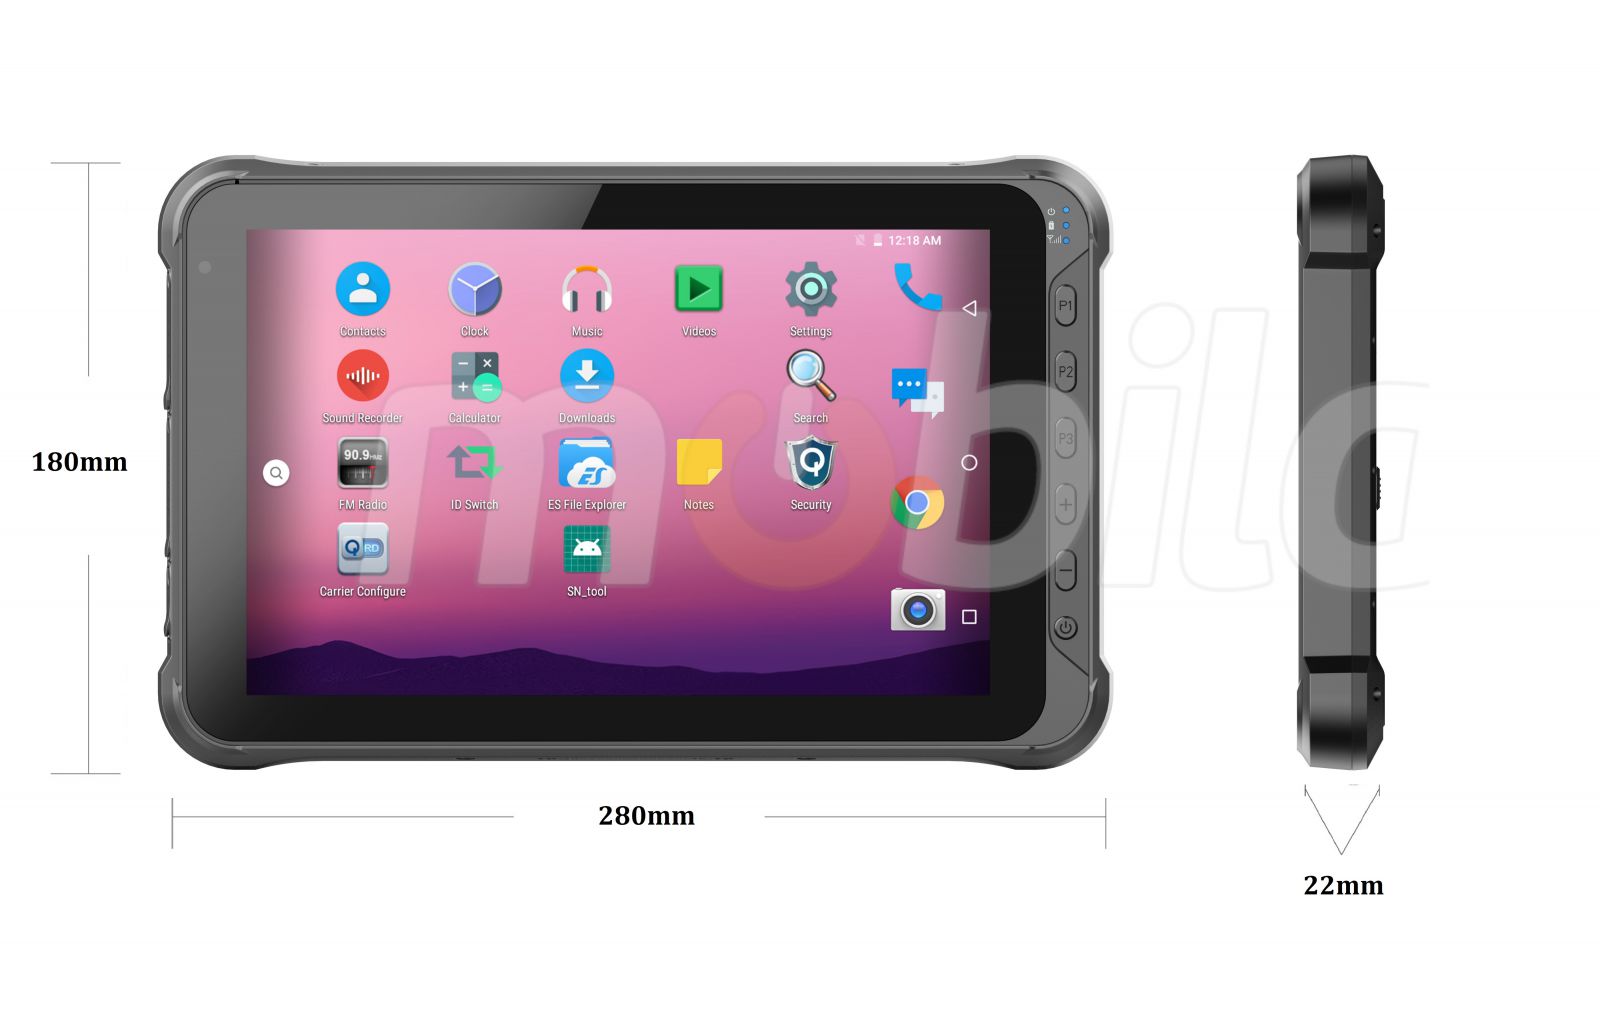 Emdoor Q15P v.5 - Odporny na upadki dziesiciocalowy tablet z Bluetooth 4.1, 4G, 4GB RAM pamici, czytnikiem kodw 2D N3680 Honeywell, dyskiem 64GB i skanerem UHF